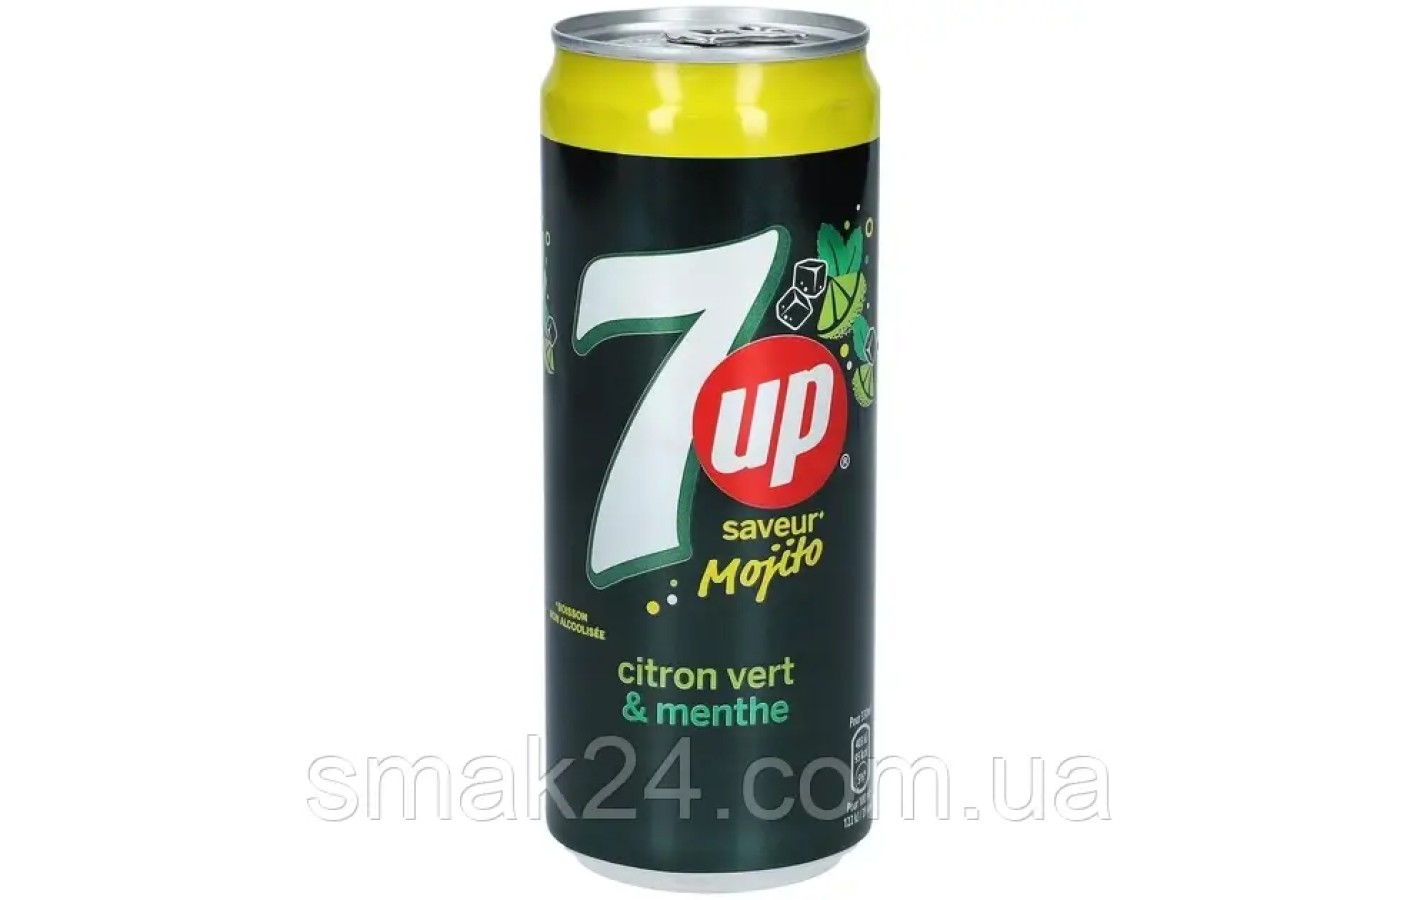 Напиток сильногазированный 7UP Mojito Citron Vert & Menthe 330мл ж/б Франция